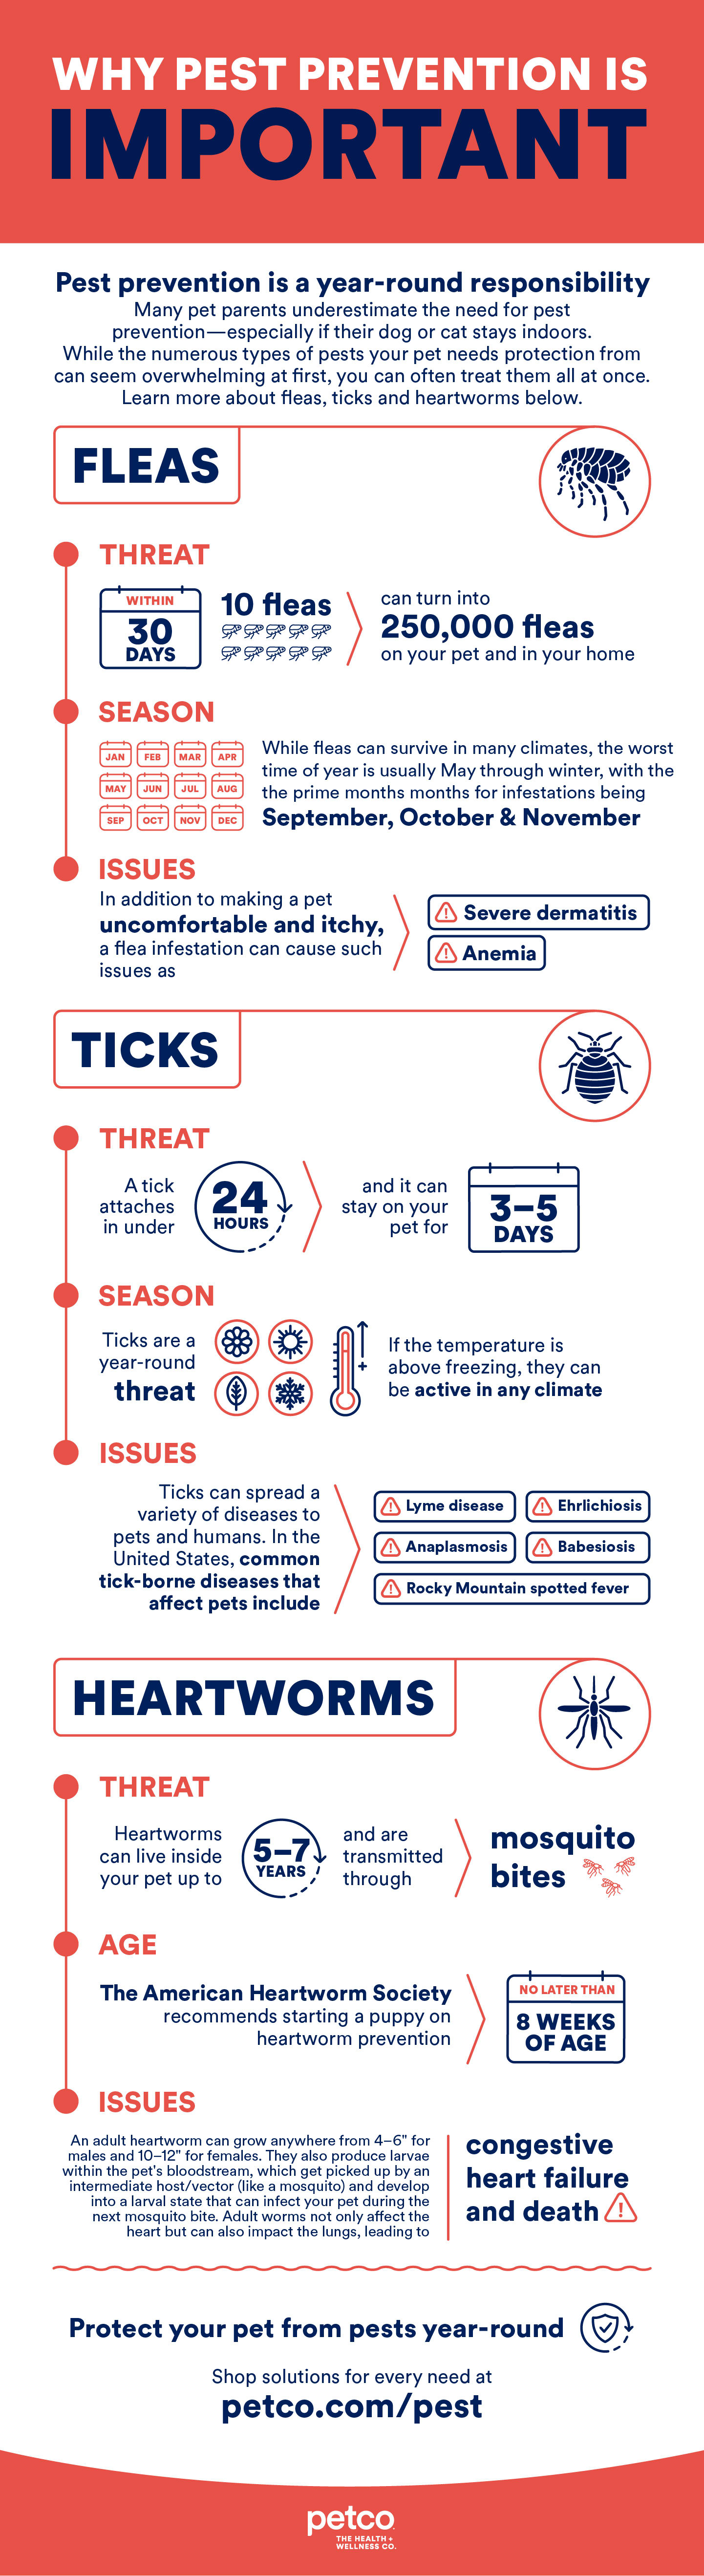 Flea and tick prevention